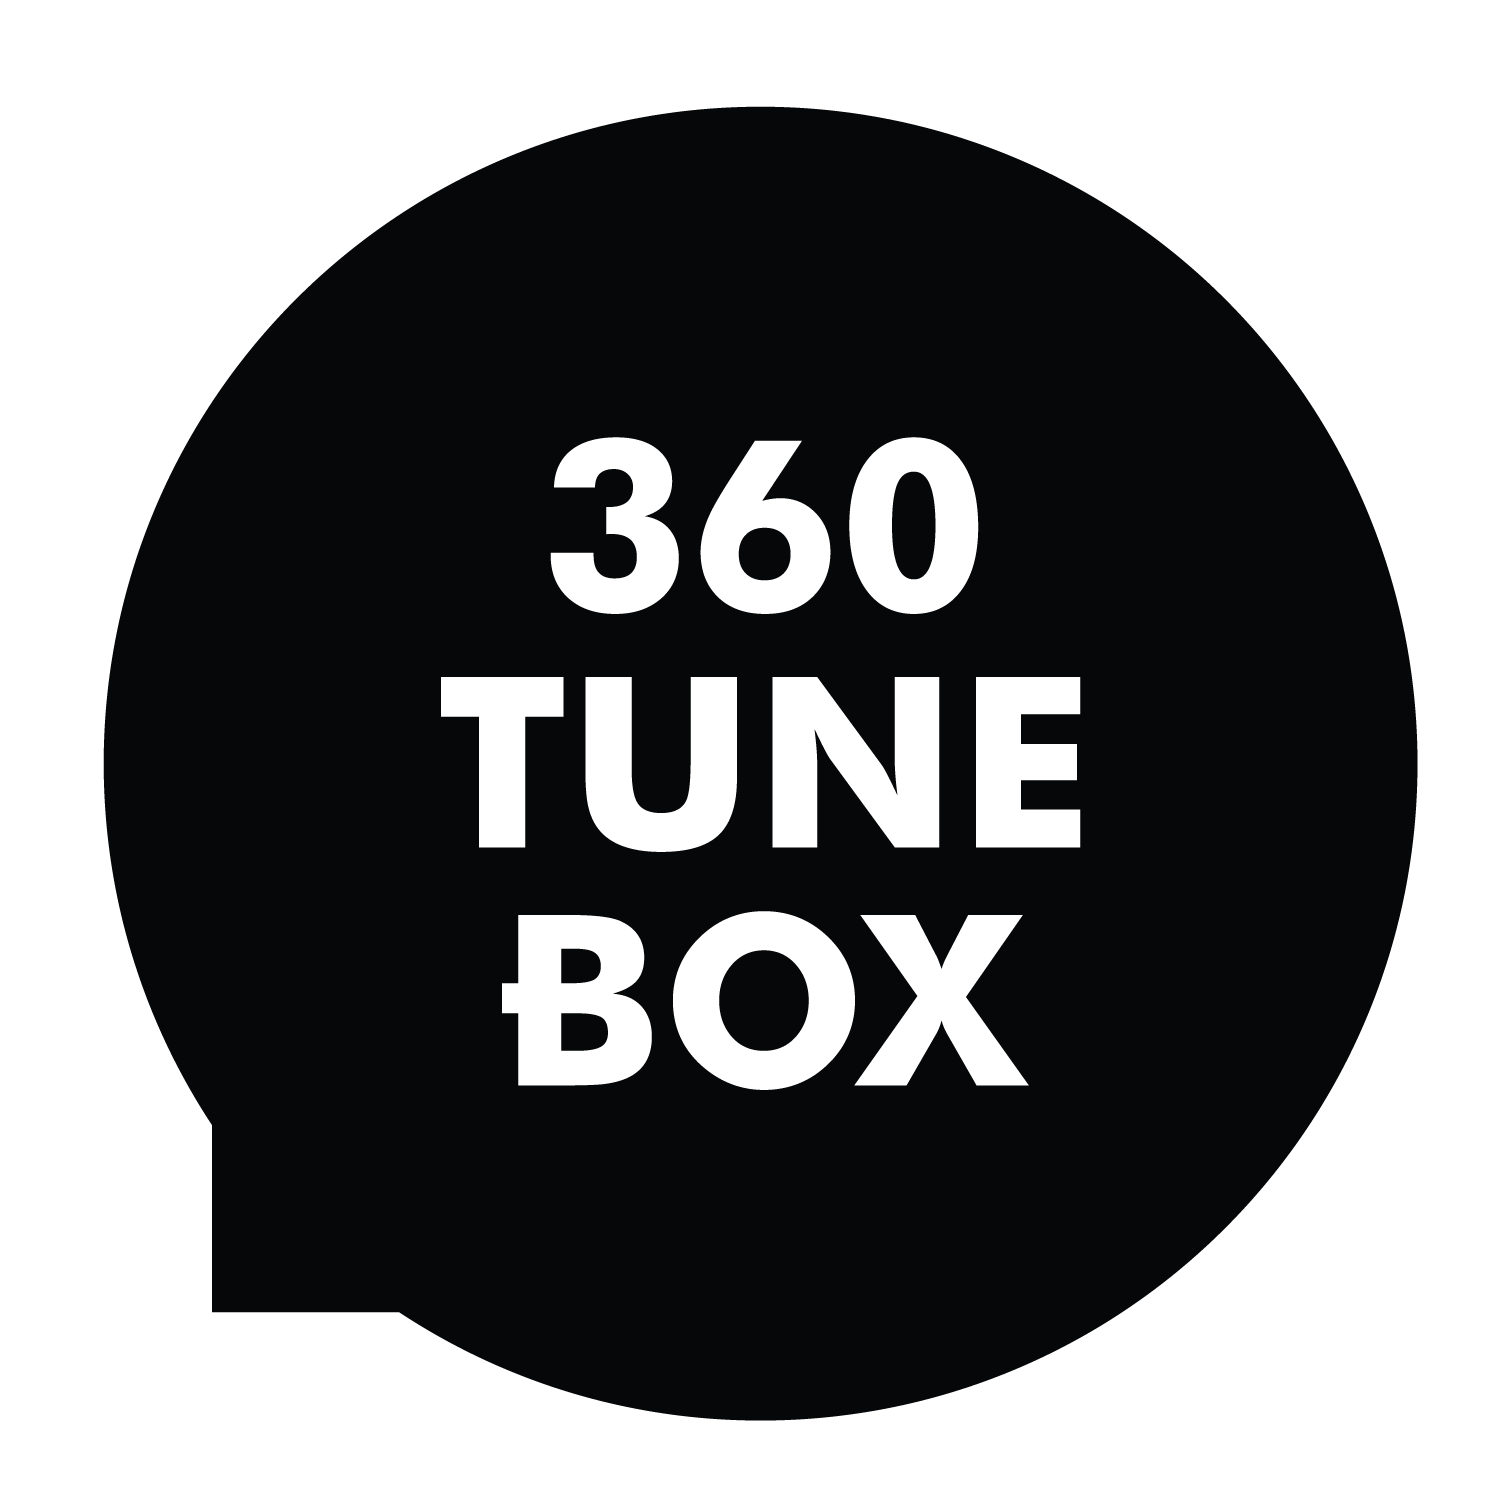 360_Tune_Box_Black